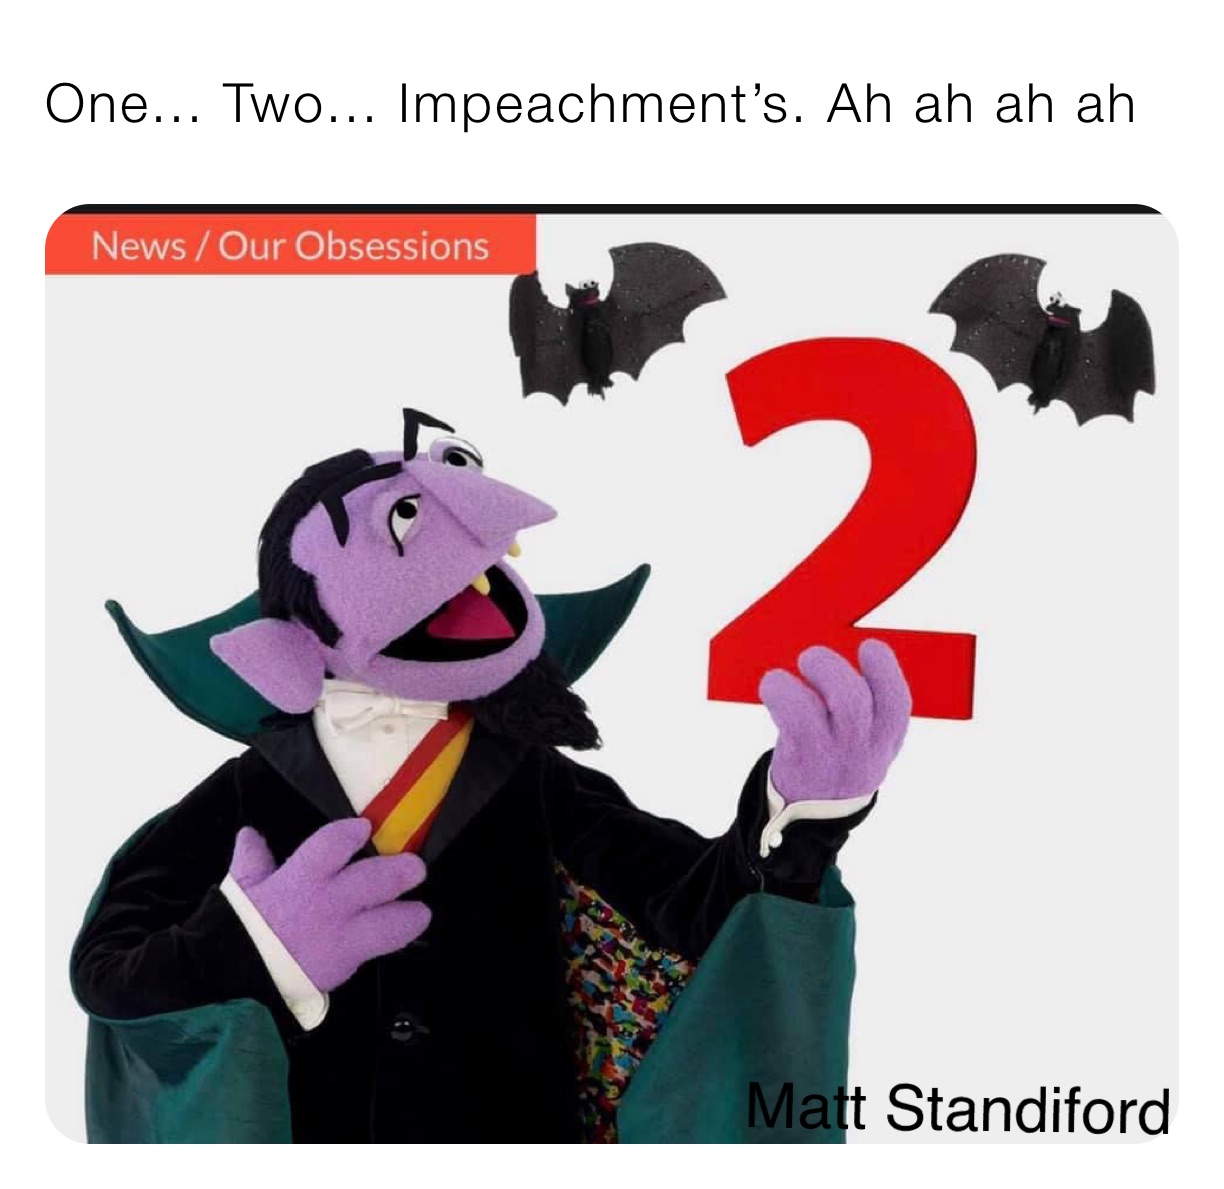 One... Two... Impeachment’s. Ah ah ah ah